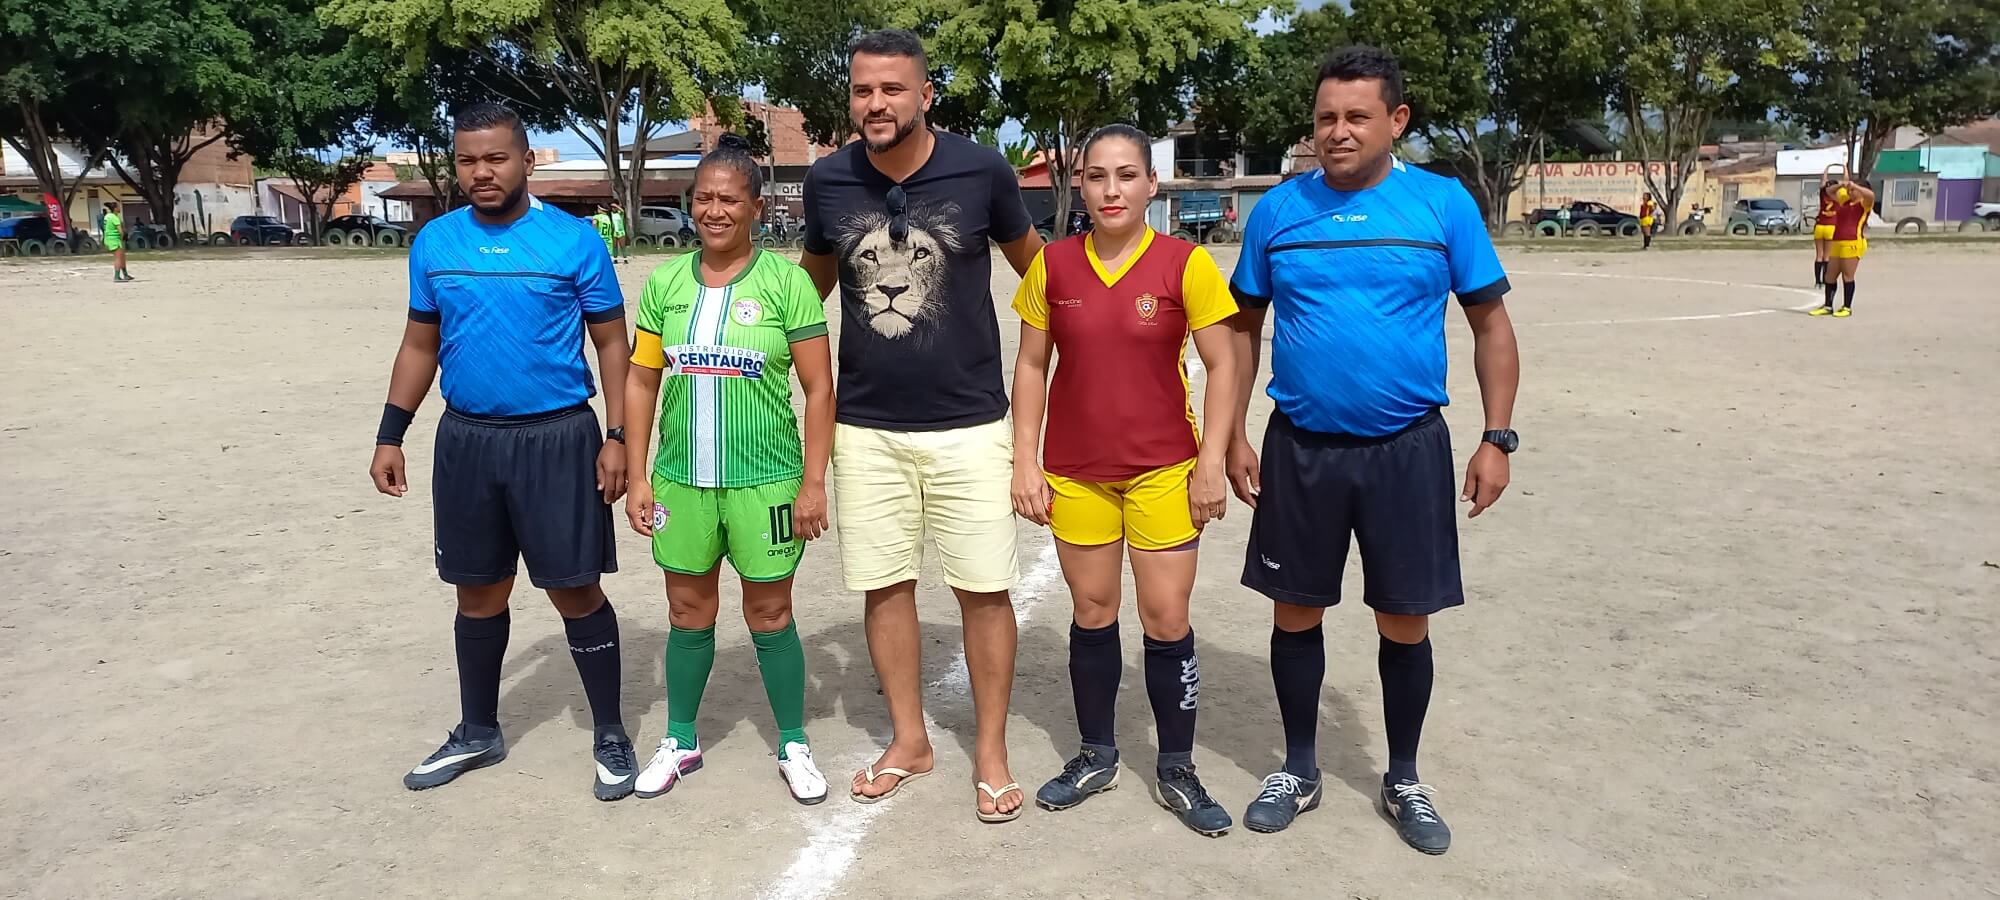 Com incentivo da Prefeitura, esporte movimenta fim de semana no município de Eunápolis 8